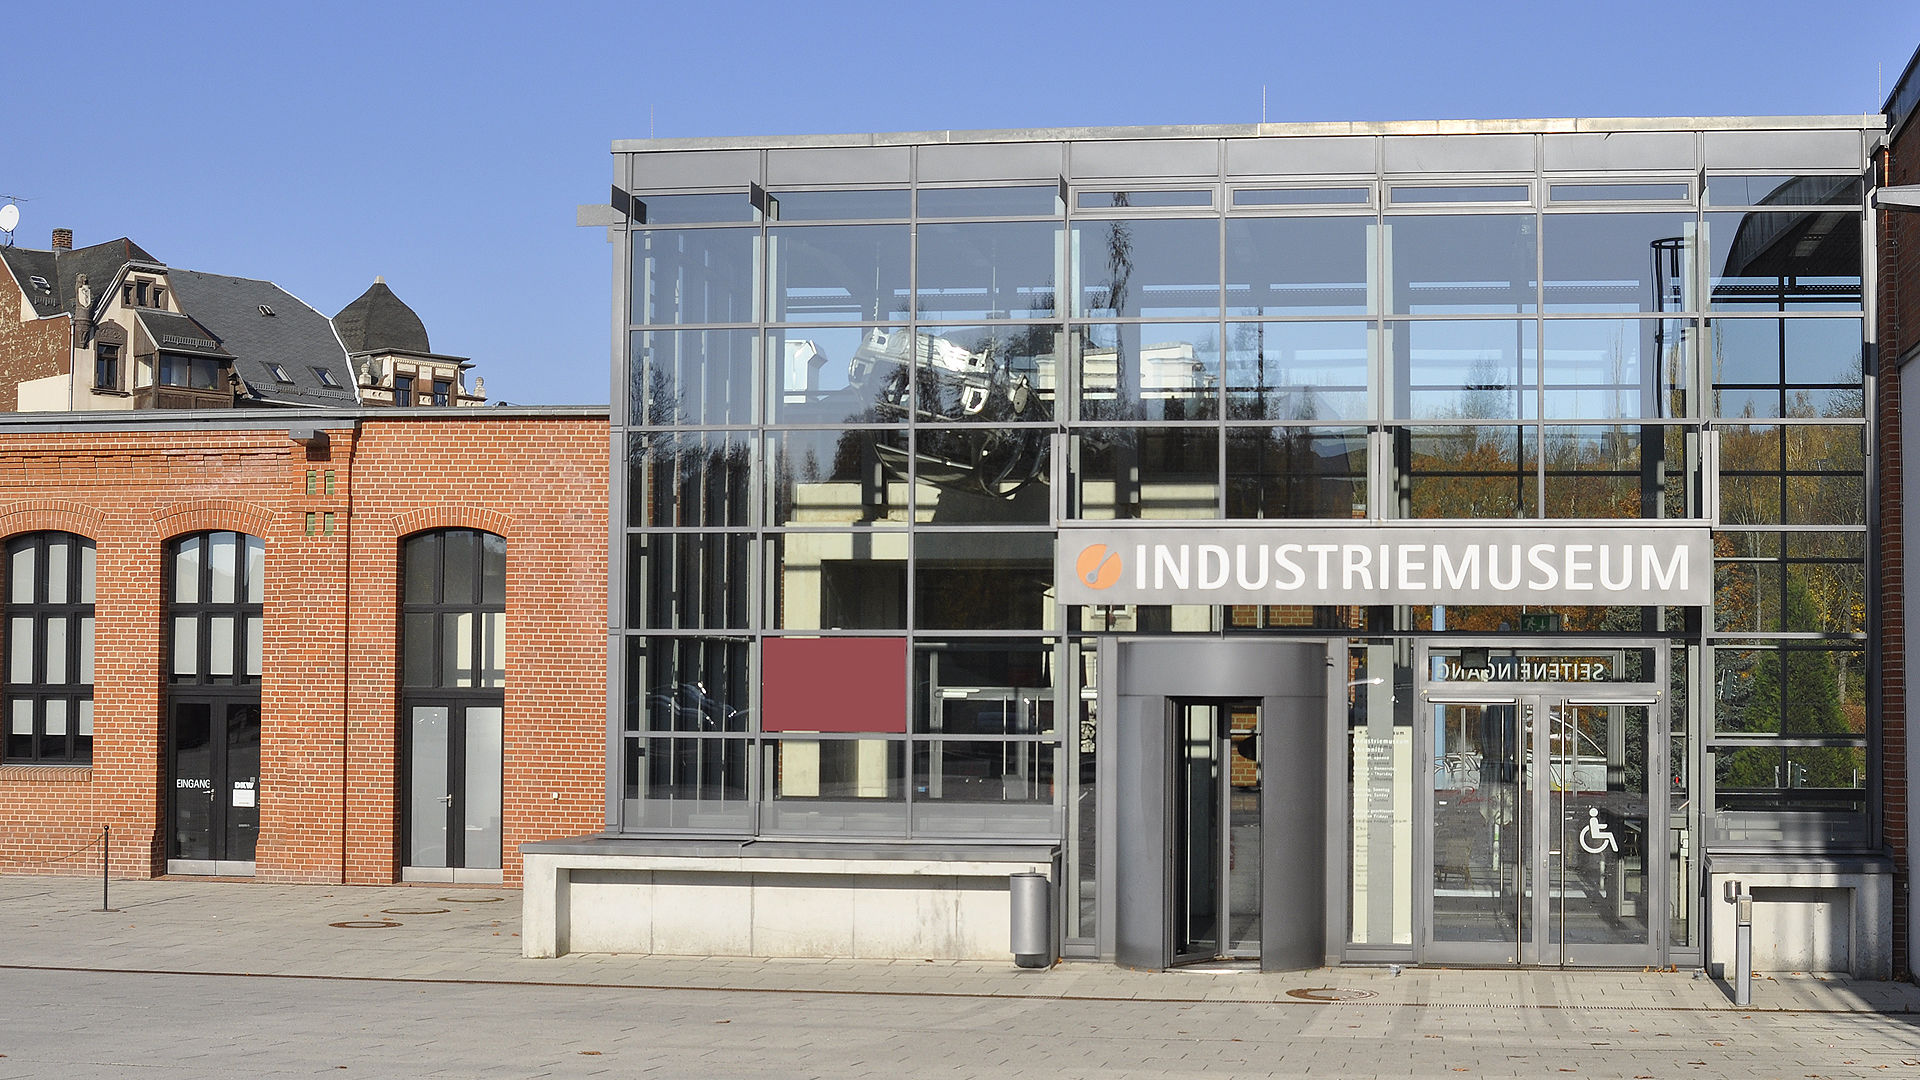 Industriemuseum Chemnitz 
© Industriemuseum Chemnitz im Sächsischen Industriemuseum